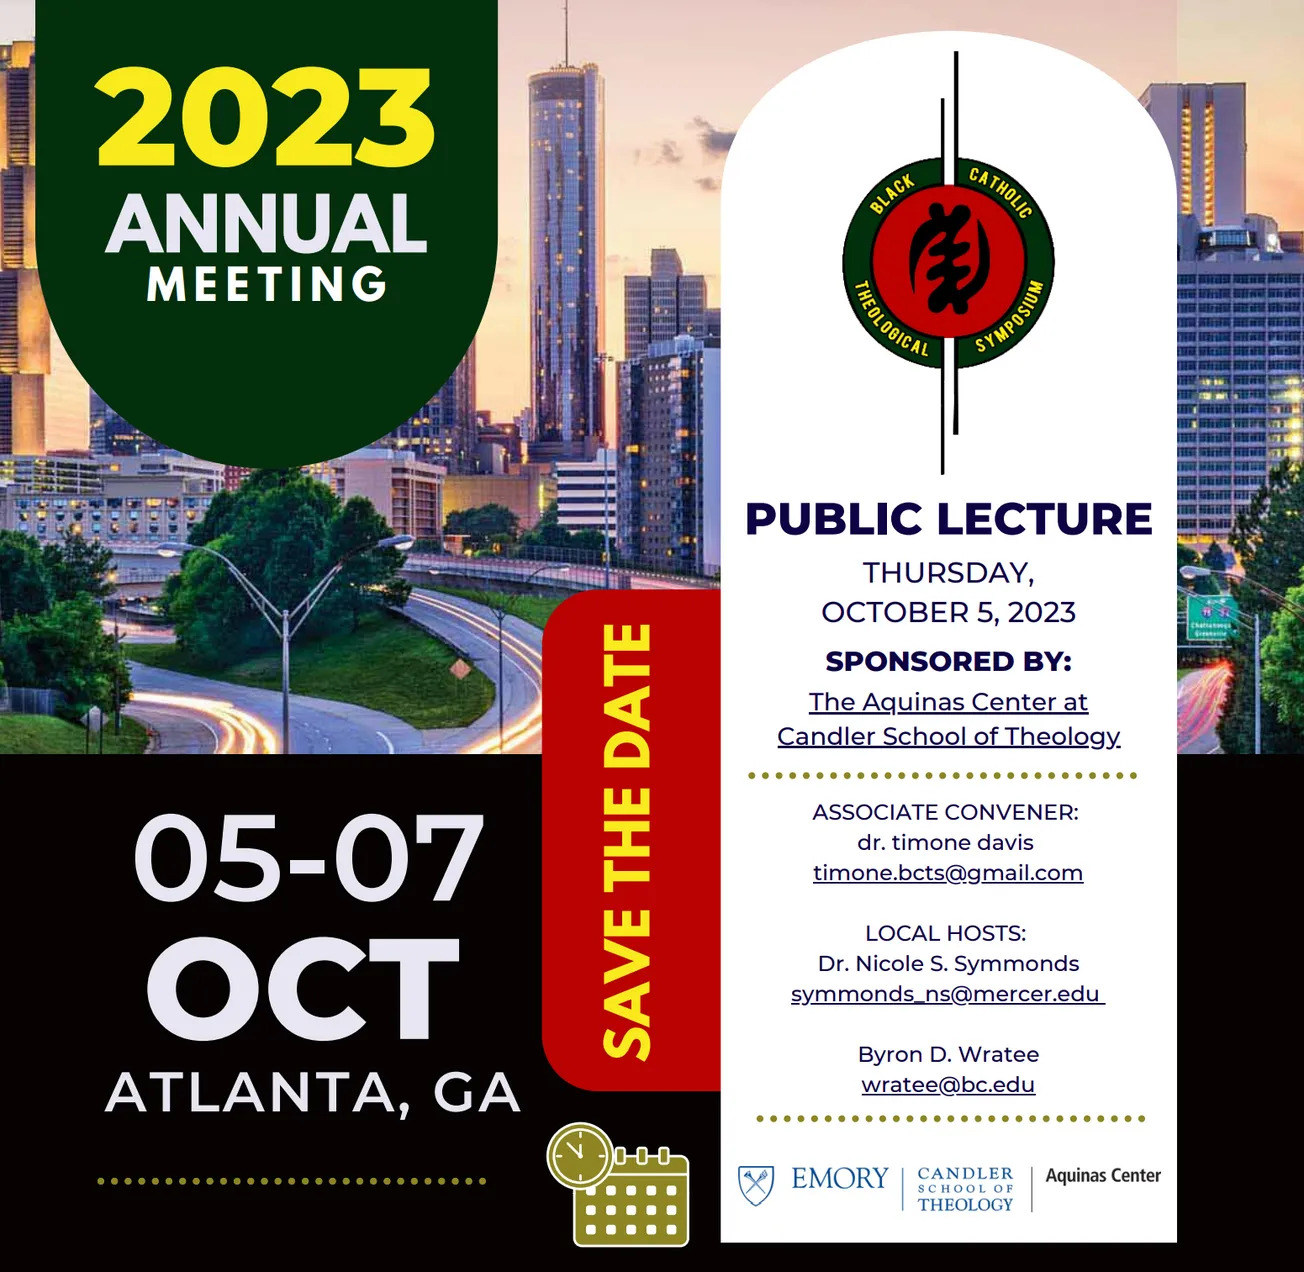 Black Catholic Theological Symposium in Atlanta Oct. 5-8